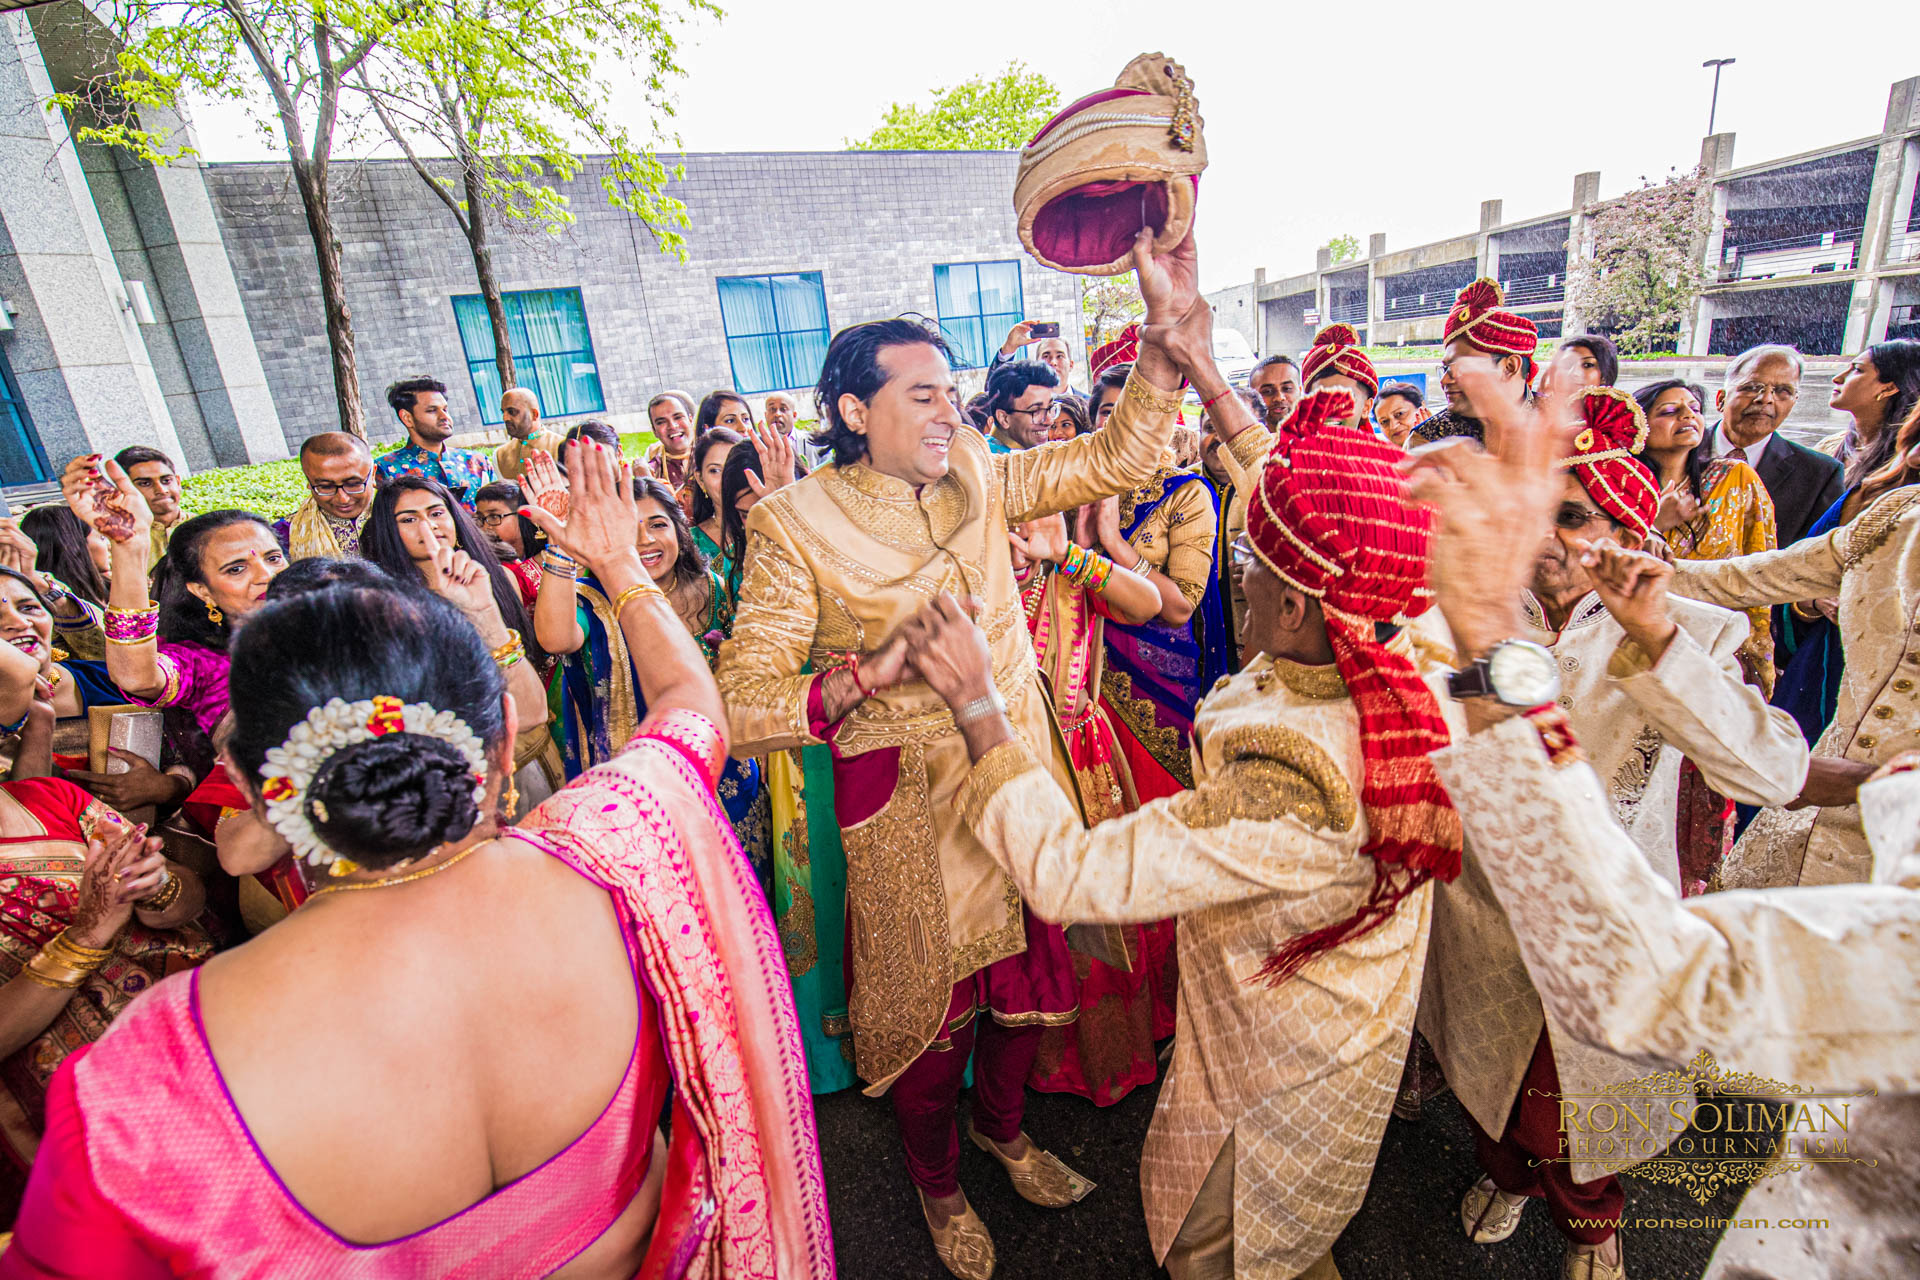 SHERATON MAHWAH INDIAN WEDDING 9